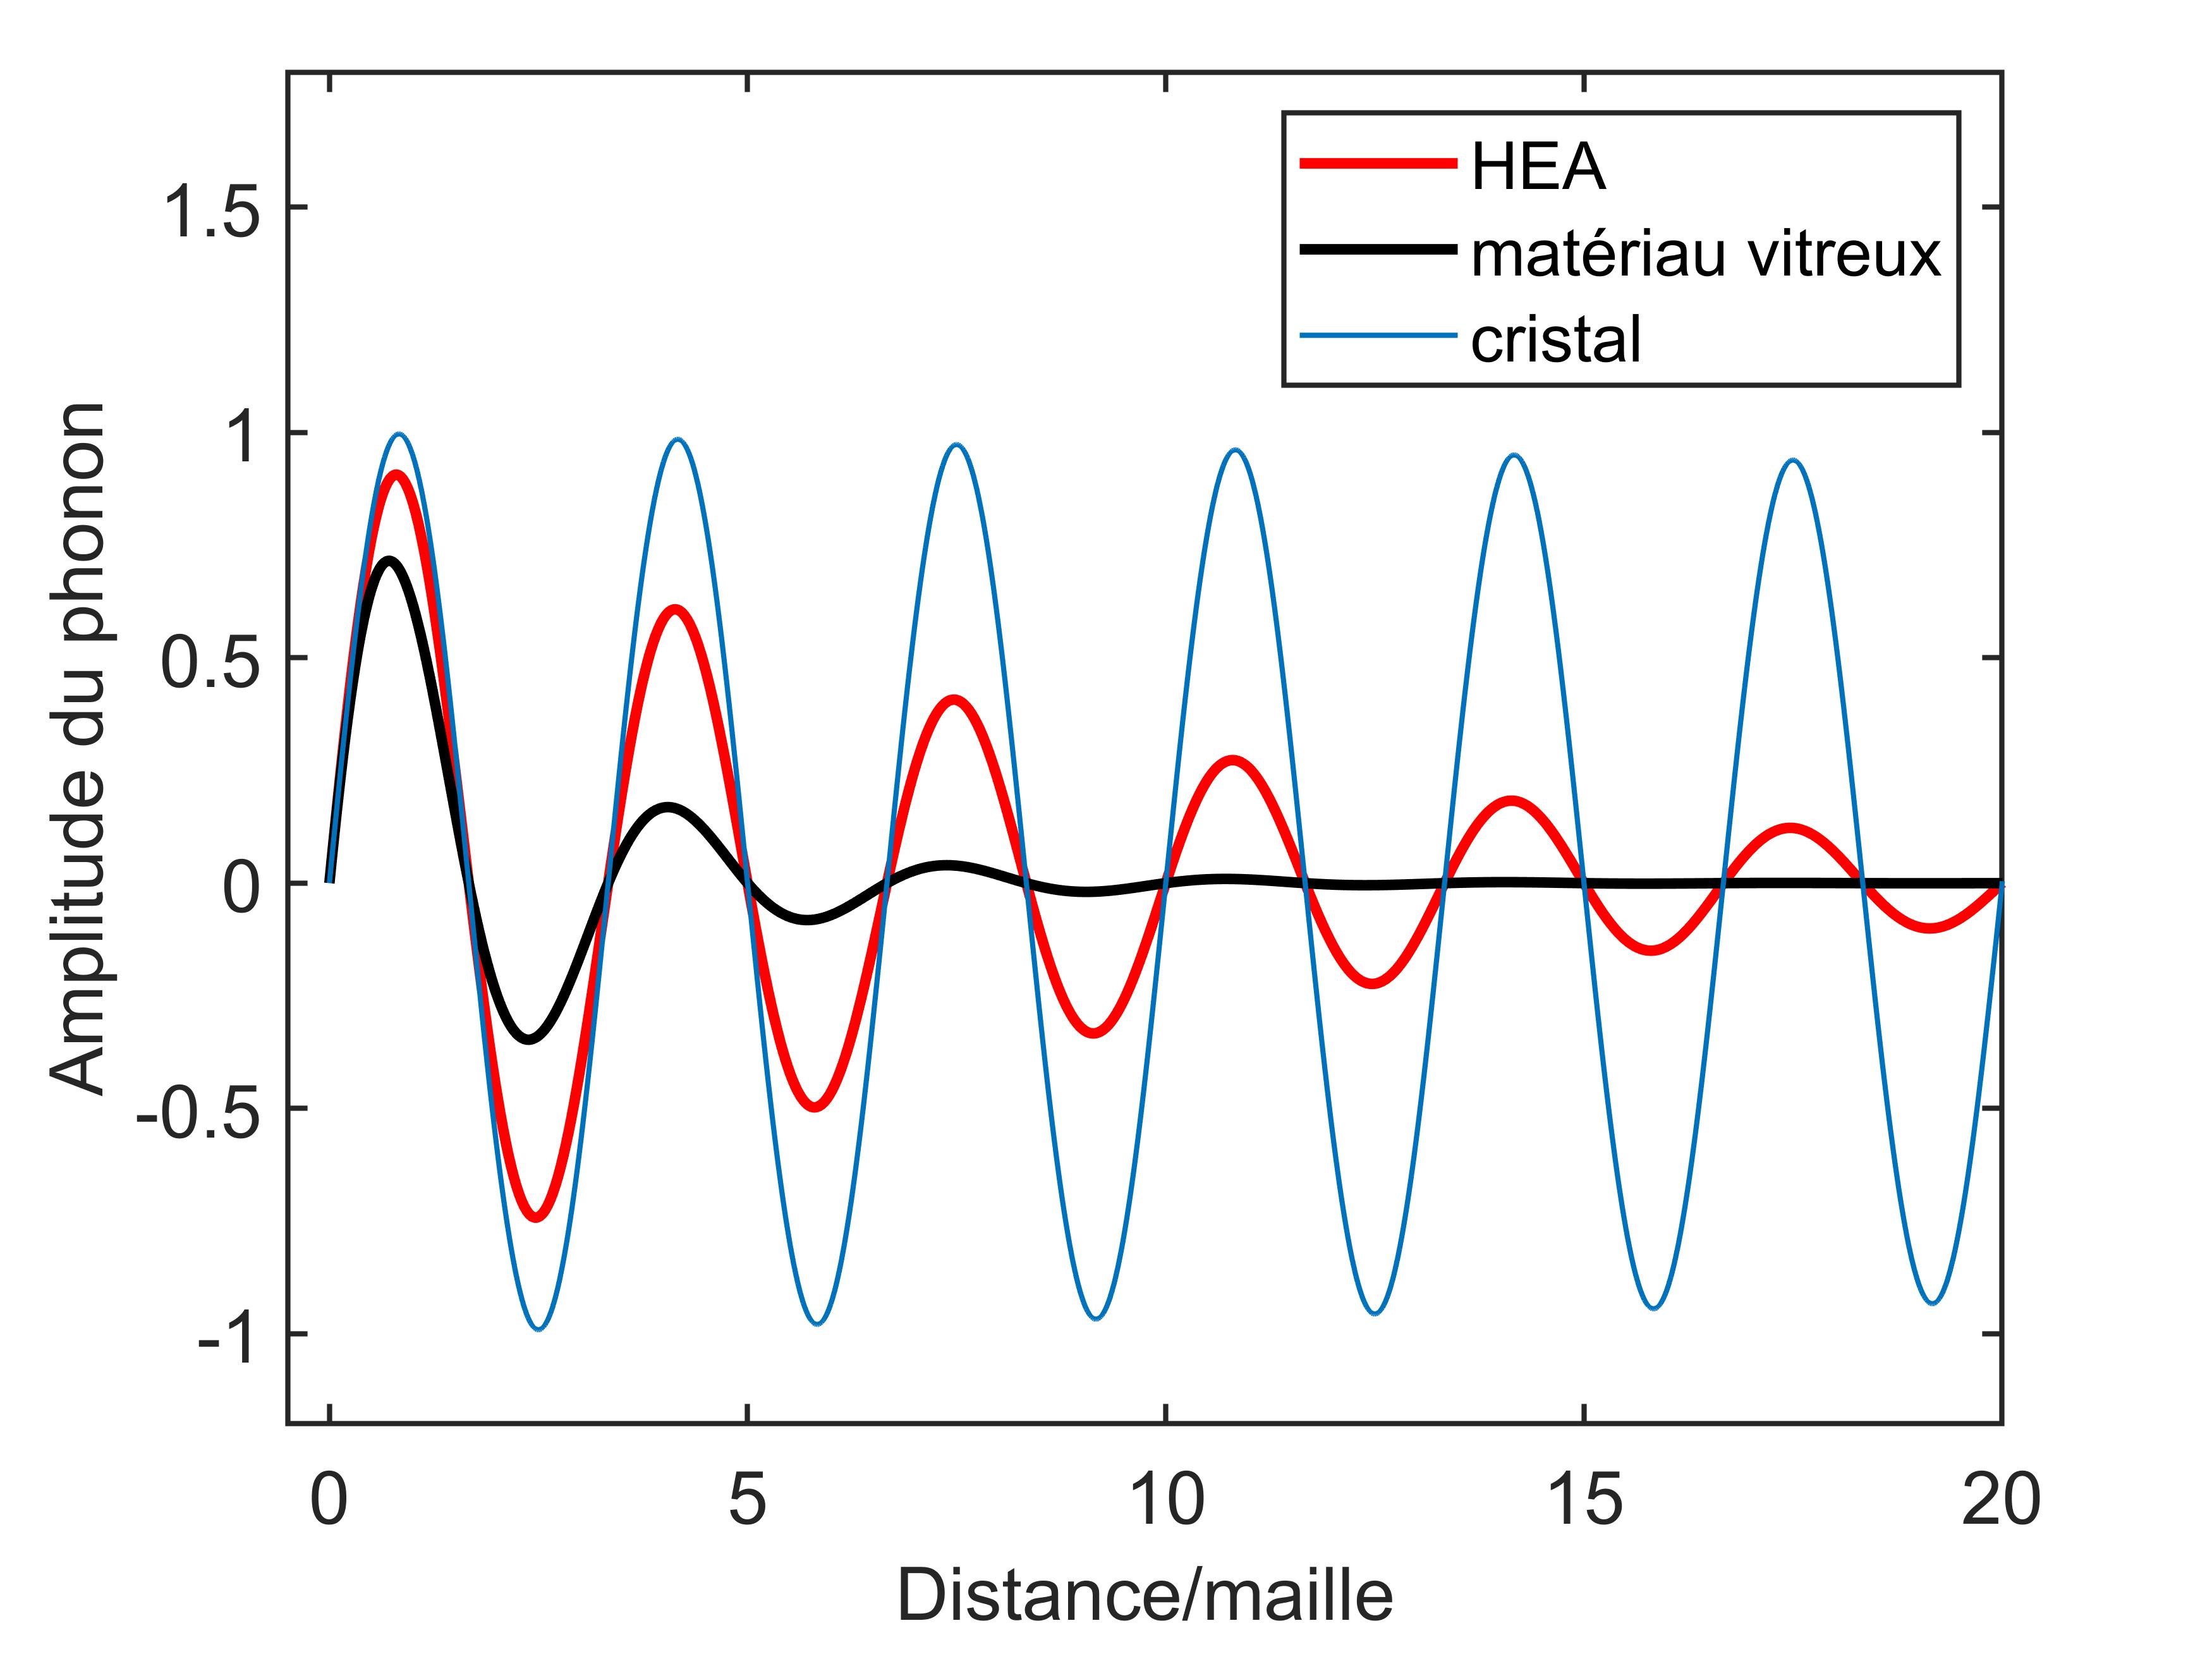 Représentation schématique de l’atténuation d’un phonon (de longueur d’onde égale à 5 fois la distance entre deux atomes voisins), dans le cas d’un cristal, d’un verre et d’un alliage de haute entropie (HEA). L’amortissement des phonons des HEA est clairement intermédiaire entre celui des cristaux (très faible) et celui des verres, que le désordre structurel augmente considérablement.